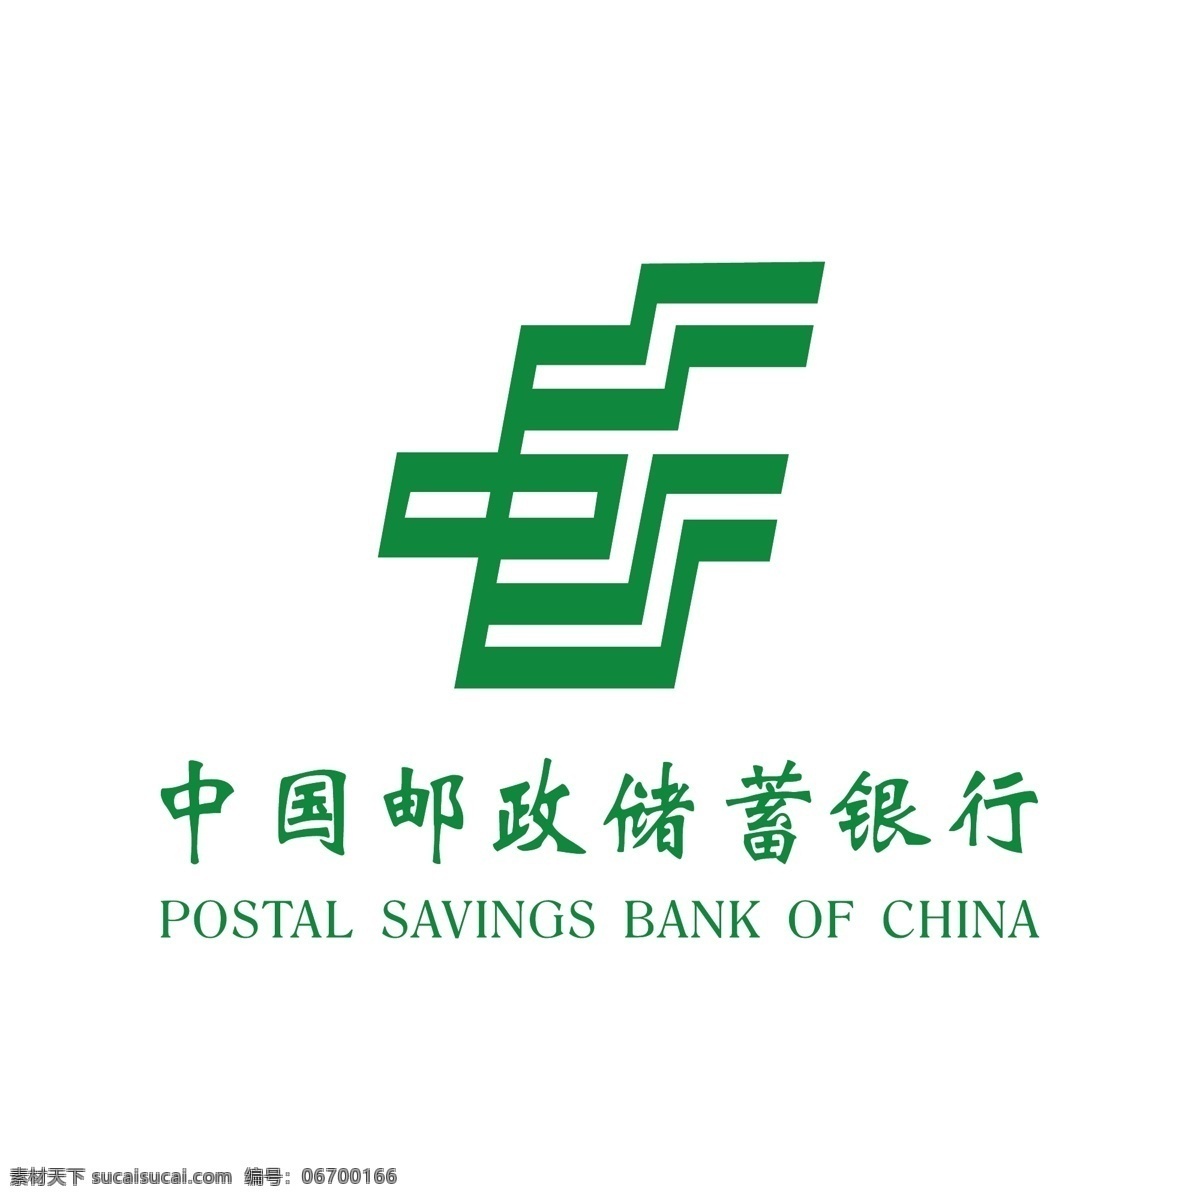 中国 邮政储蓄 银行 标志 中国邮政 邮政储蓄银行 中国邮政标志 邮政 logo 邮政储蓄标志 银行标志 银行logo